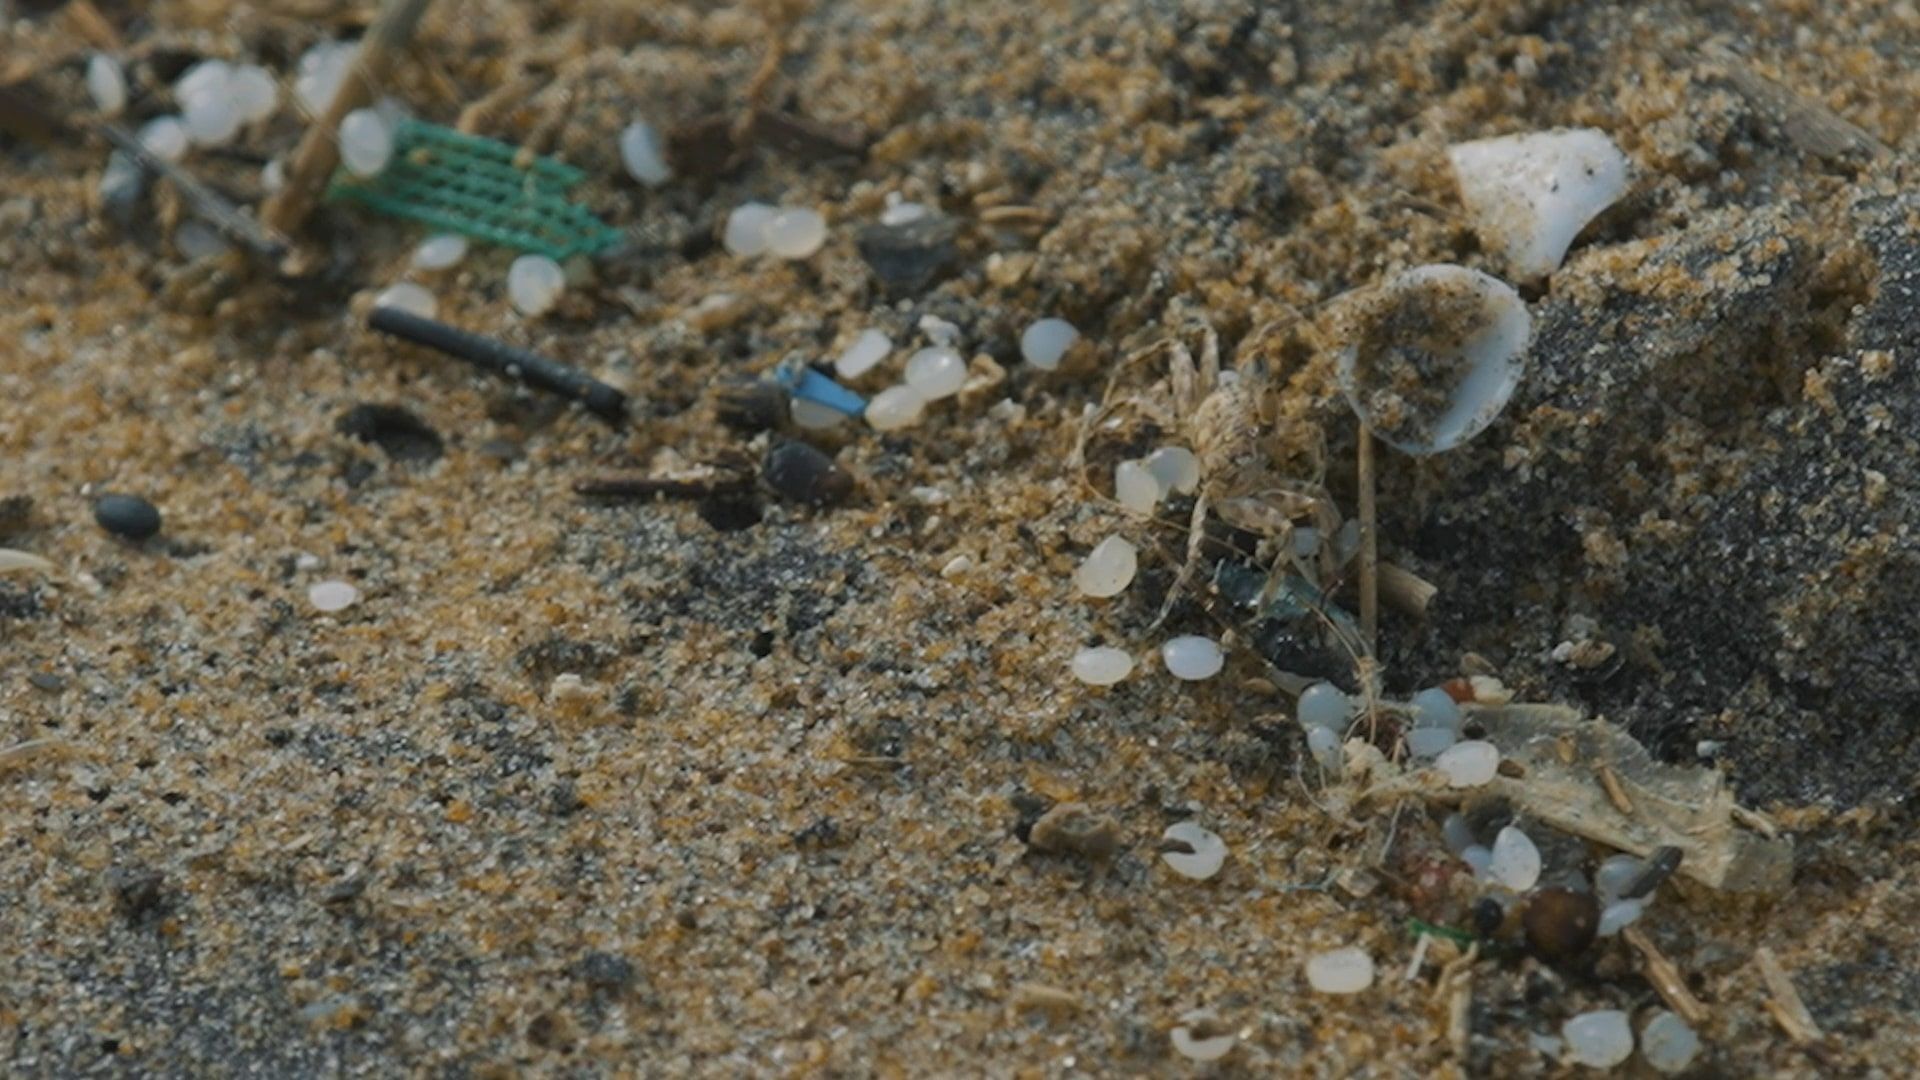 Granuli di plastica (nurdles) sulla spiaggia: palline di millimetri che sono difficili da raccogliere.